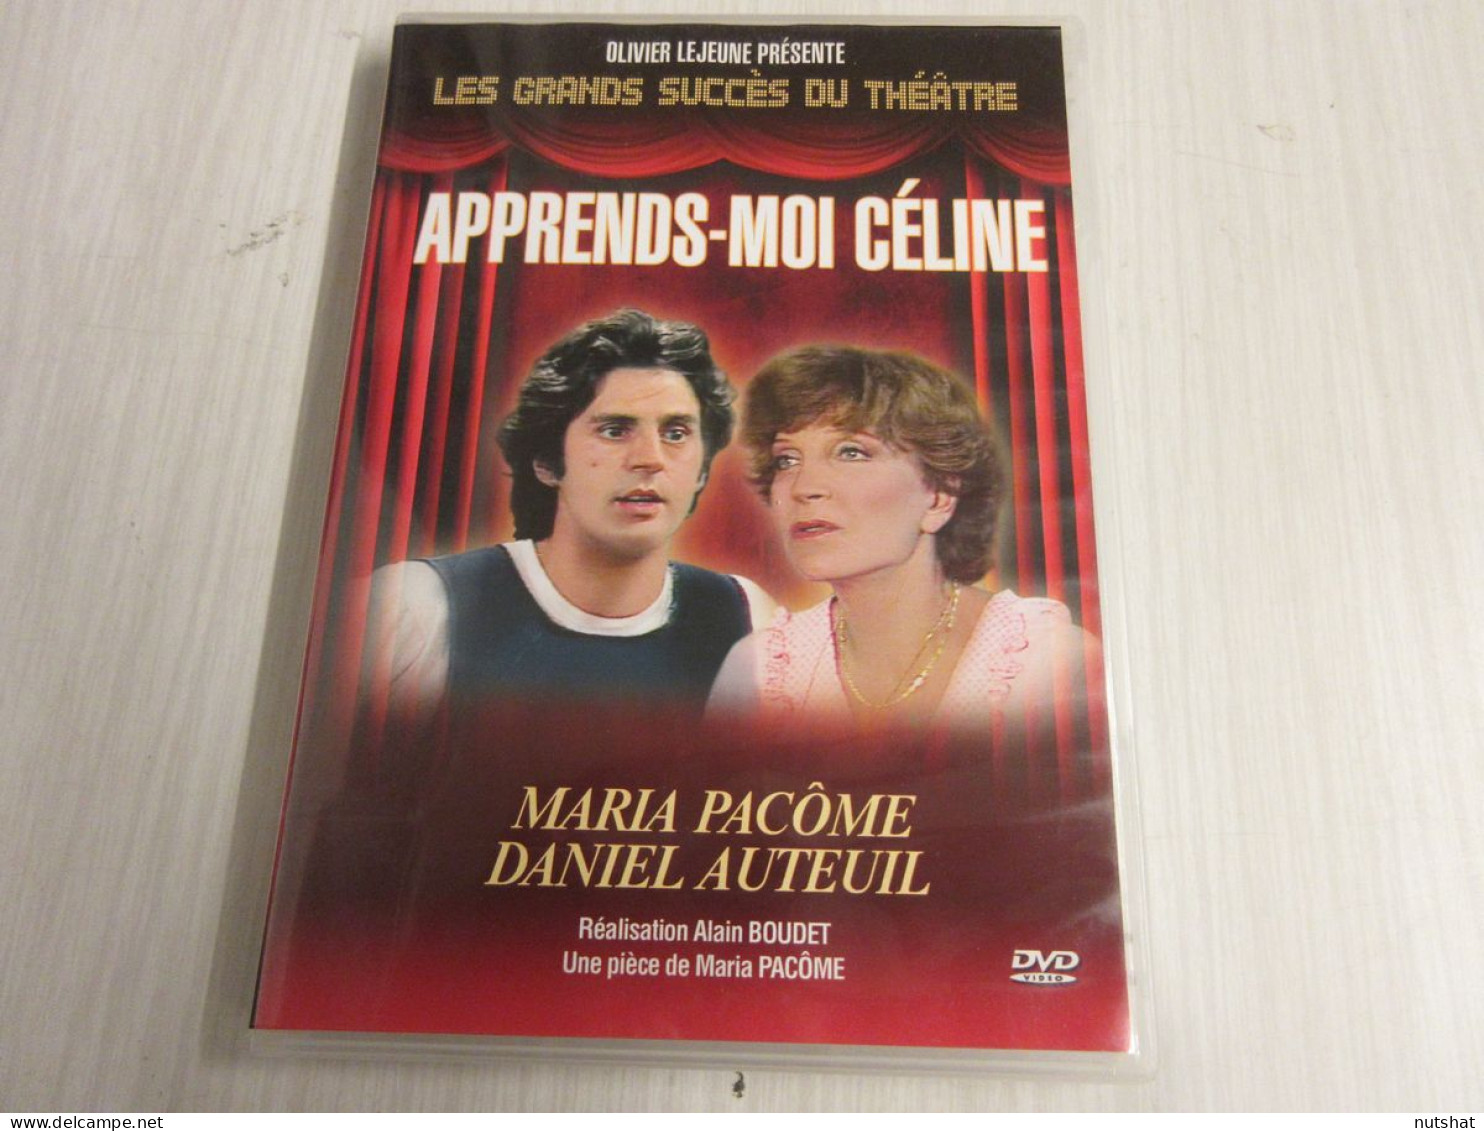 DVD THEATRE APPRENDS-MOI CELINE Daniel AUTEUIL Maria PACOME 2009 100mn + Bonus - TV Shows & Series